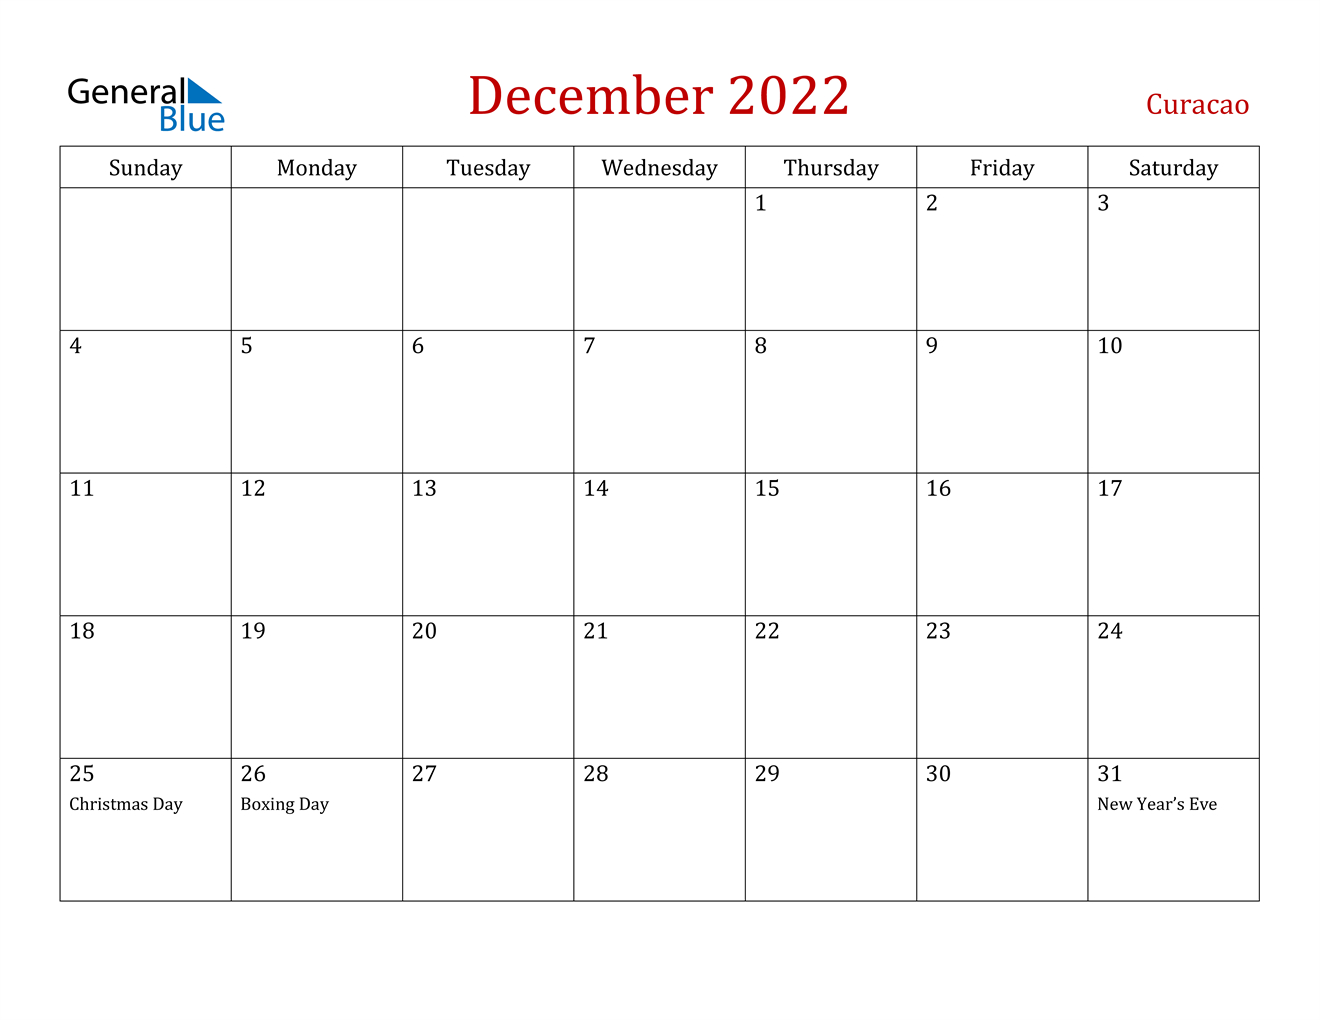 December 2022 Calendar - Curacao Printable Calendar December 2022